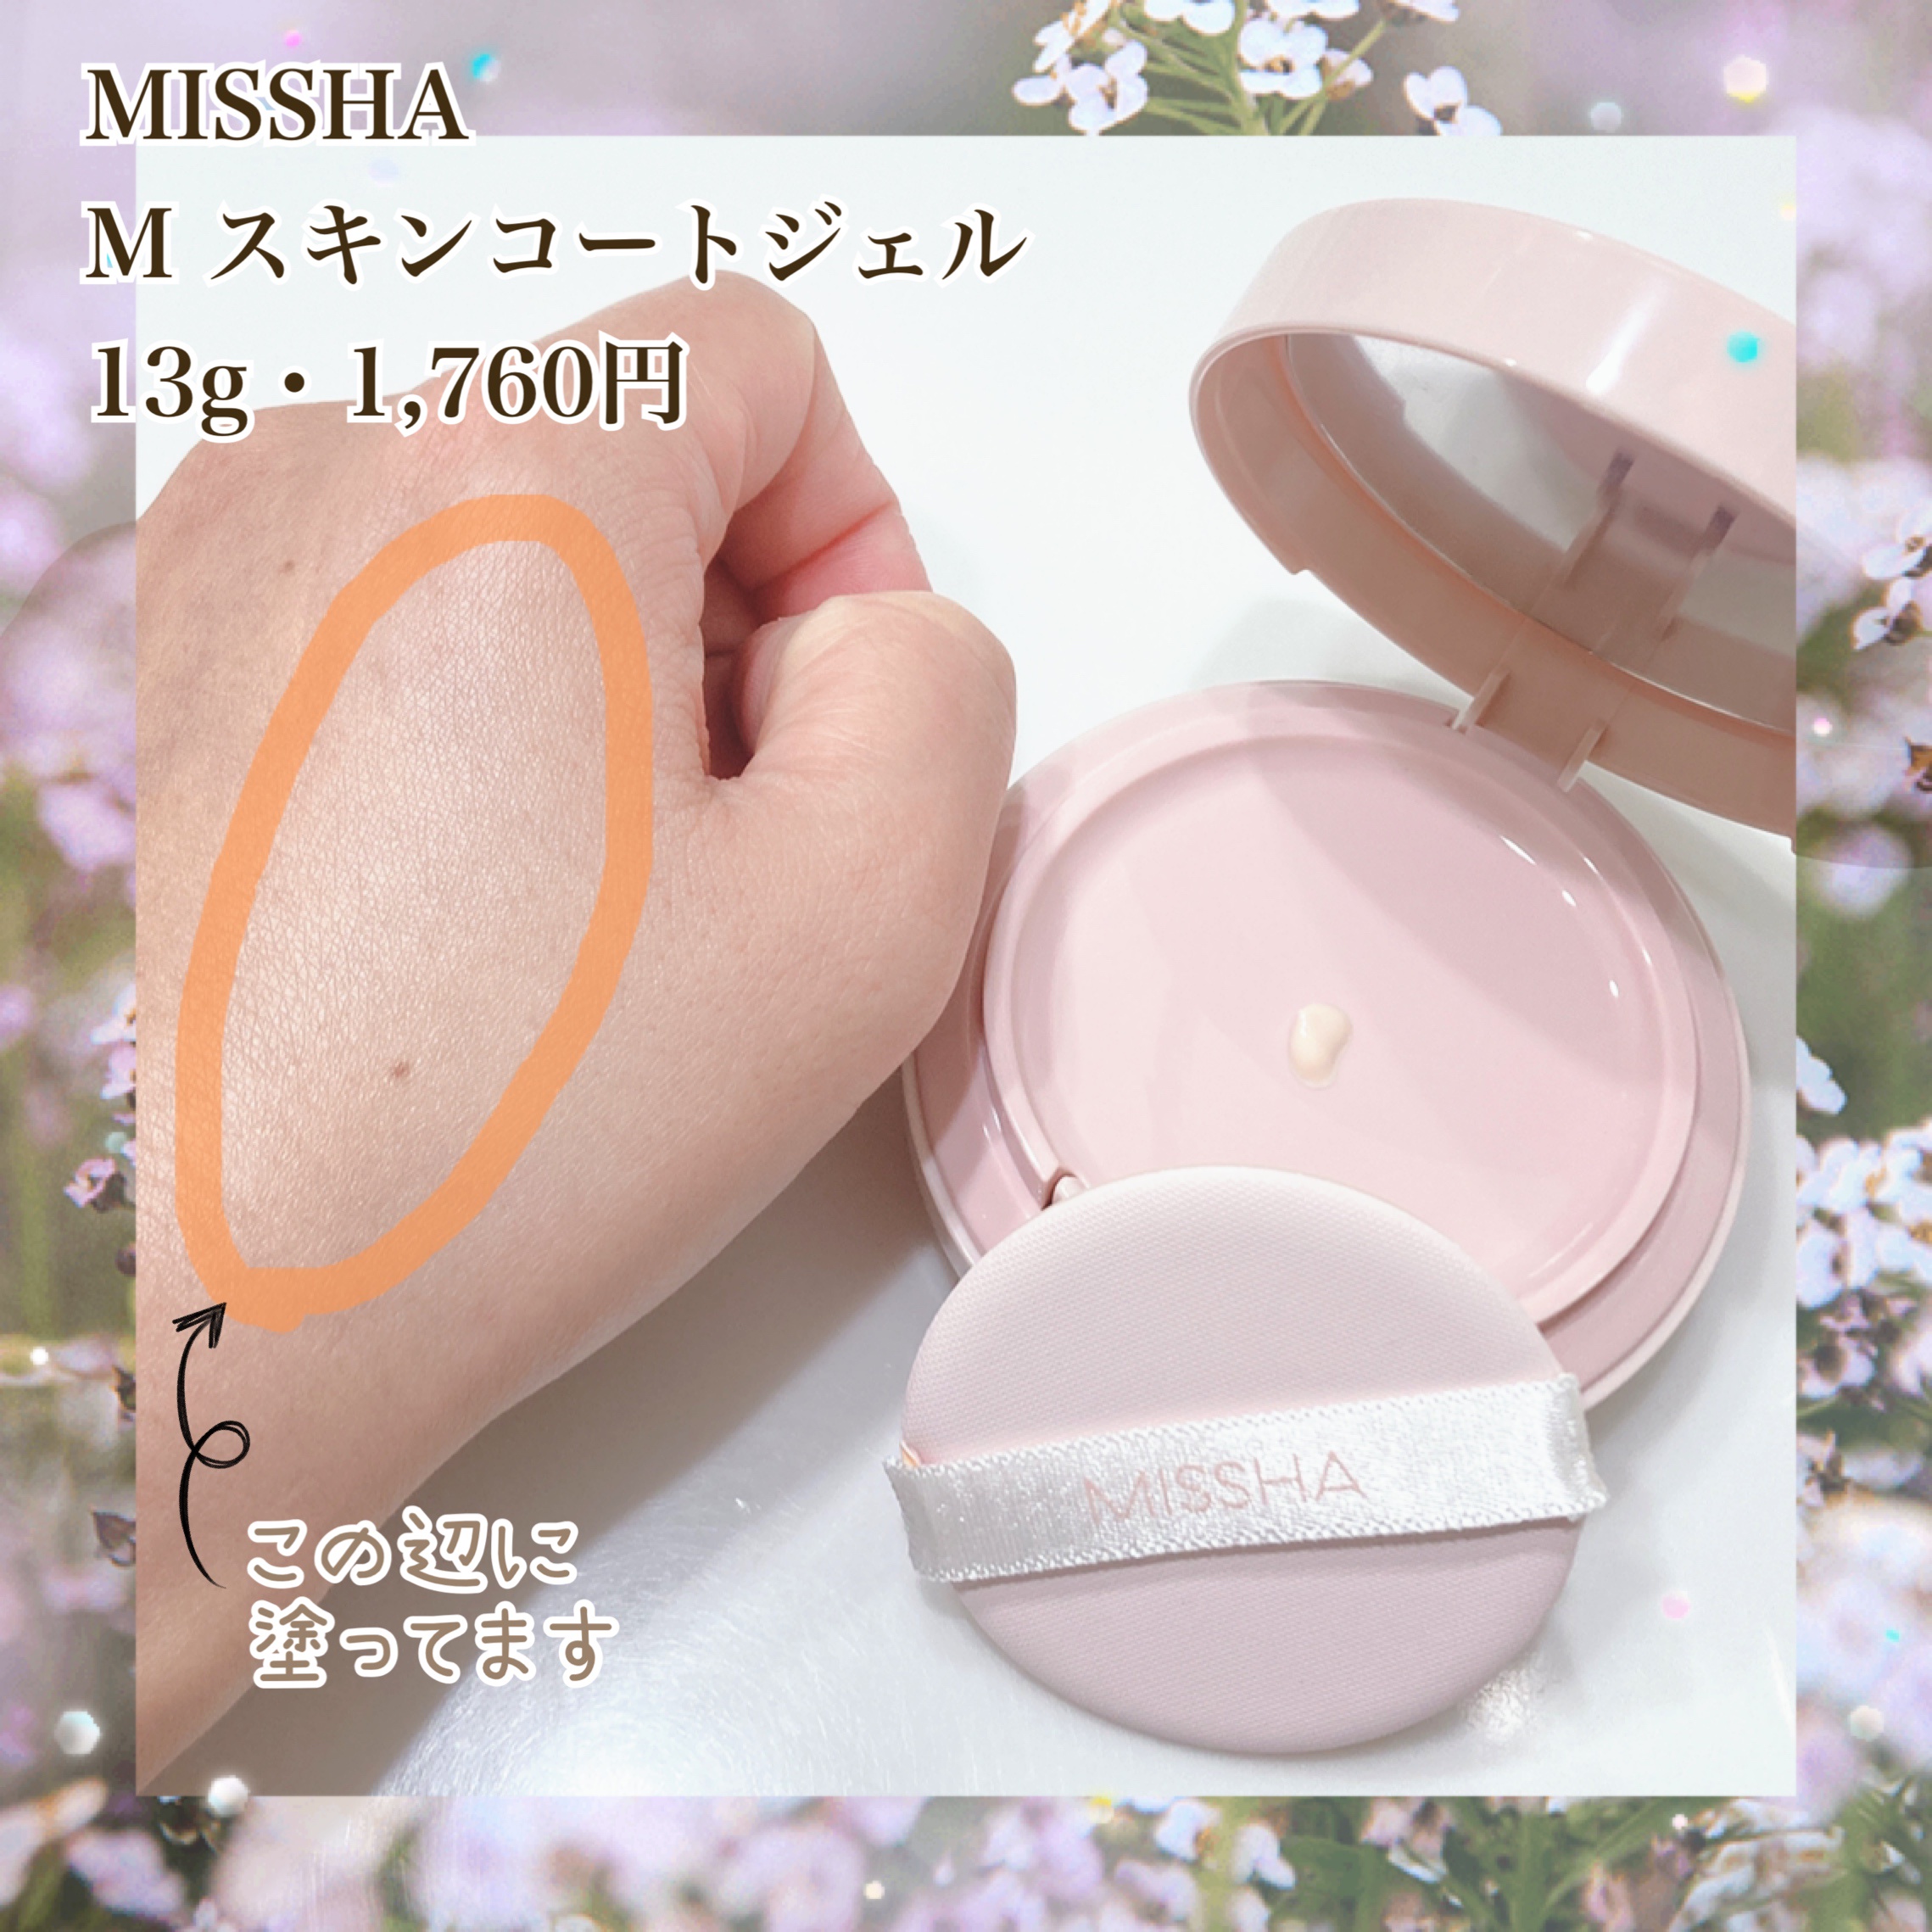 MISSHA M スキンコートジェル 13g - その他